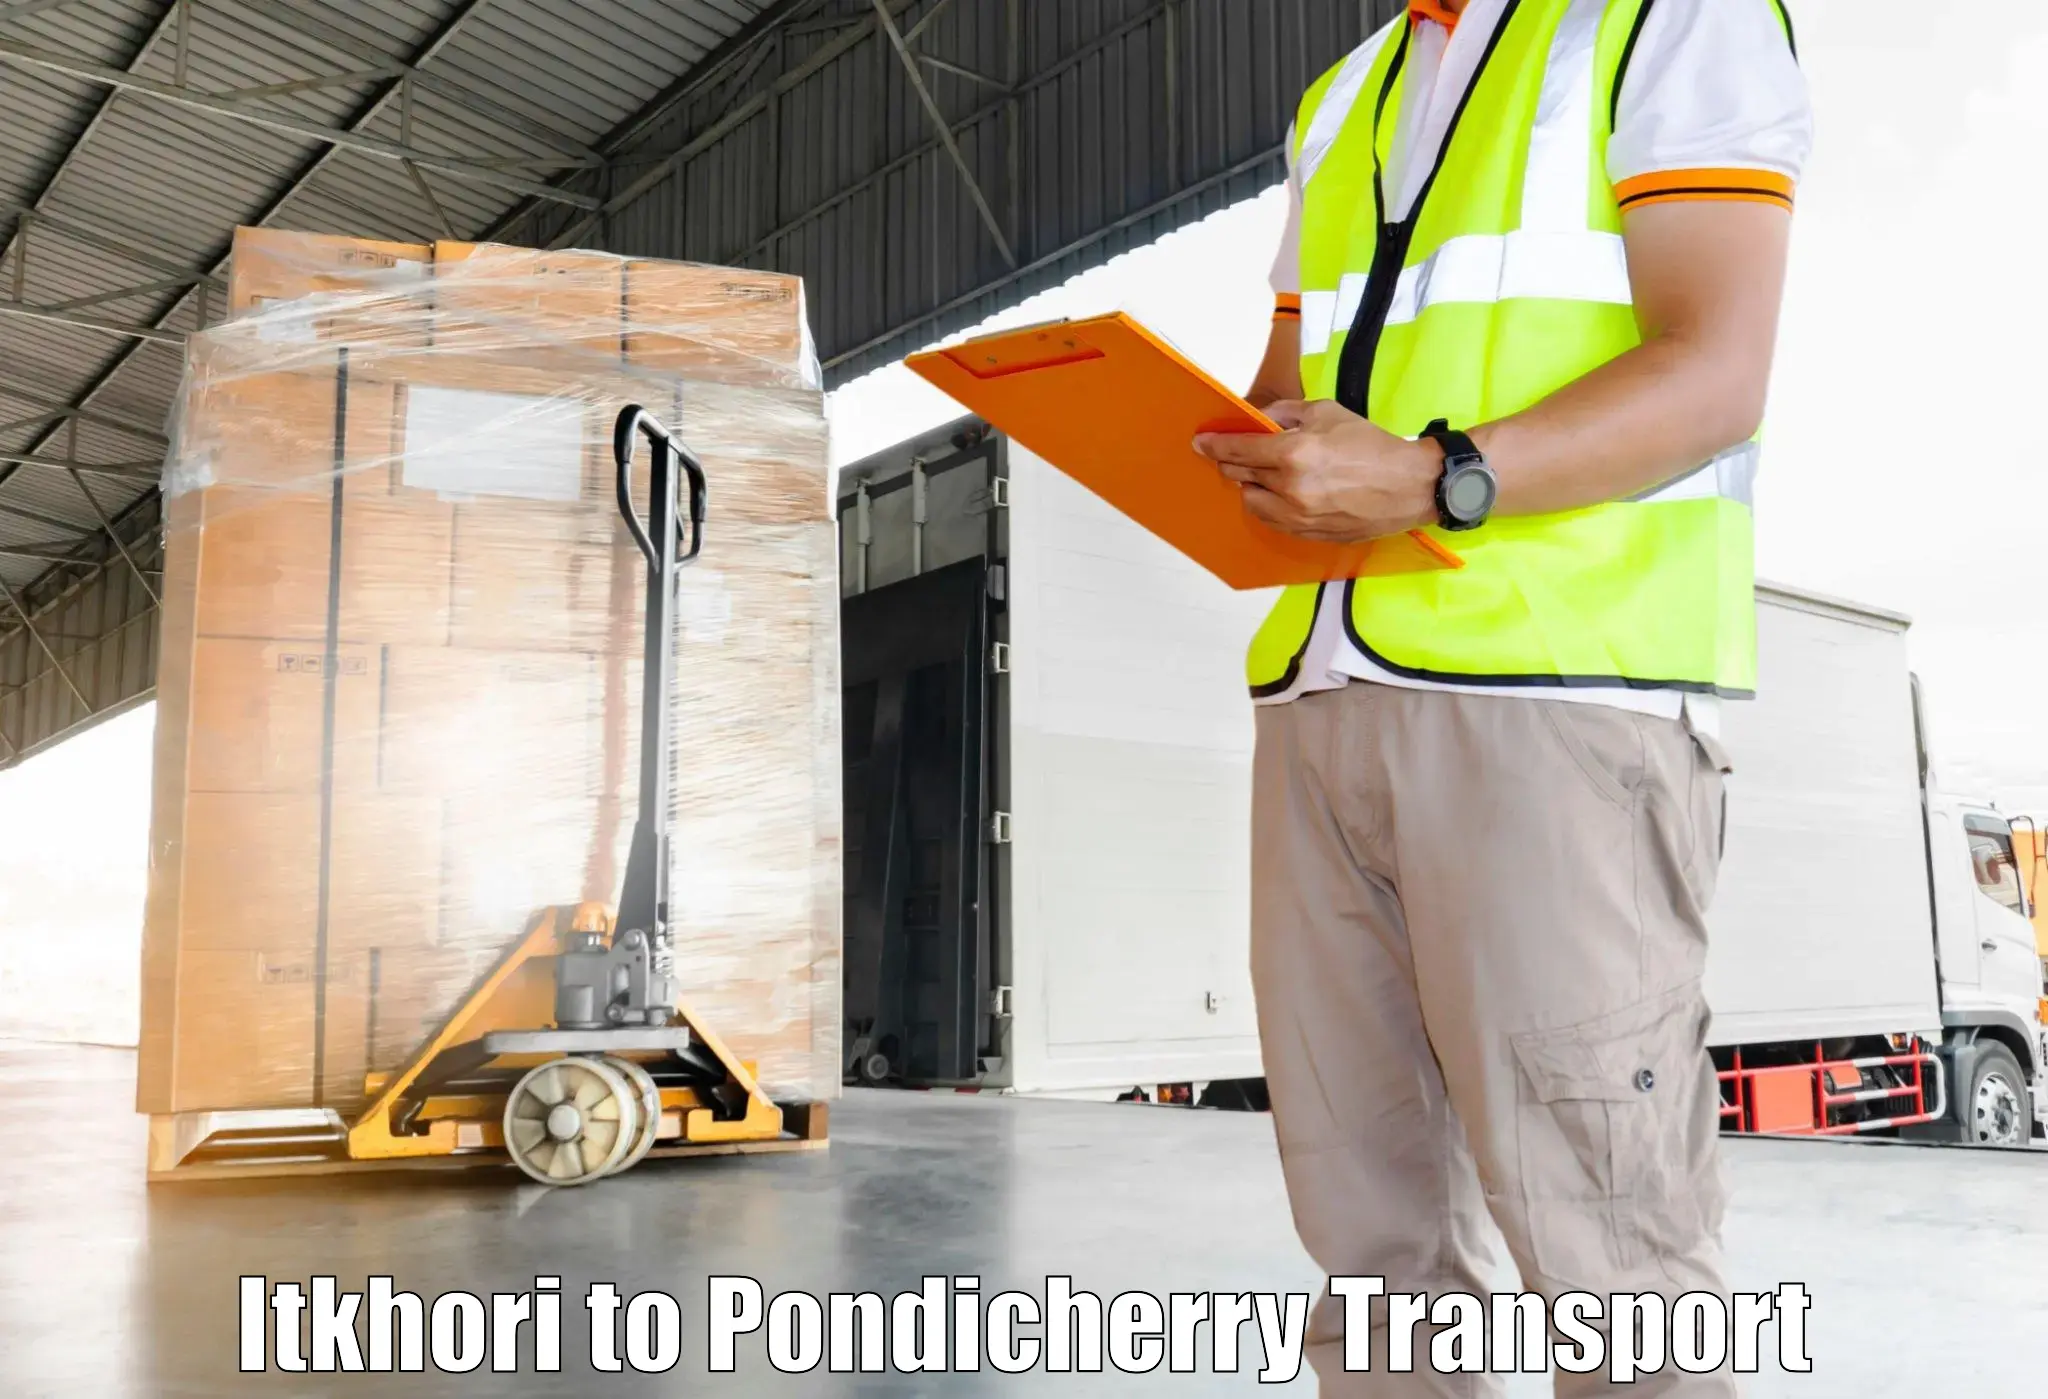 Online transport Itkhori to Pondicherry University